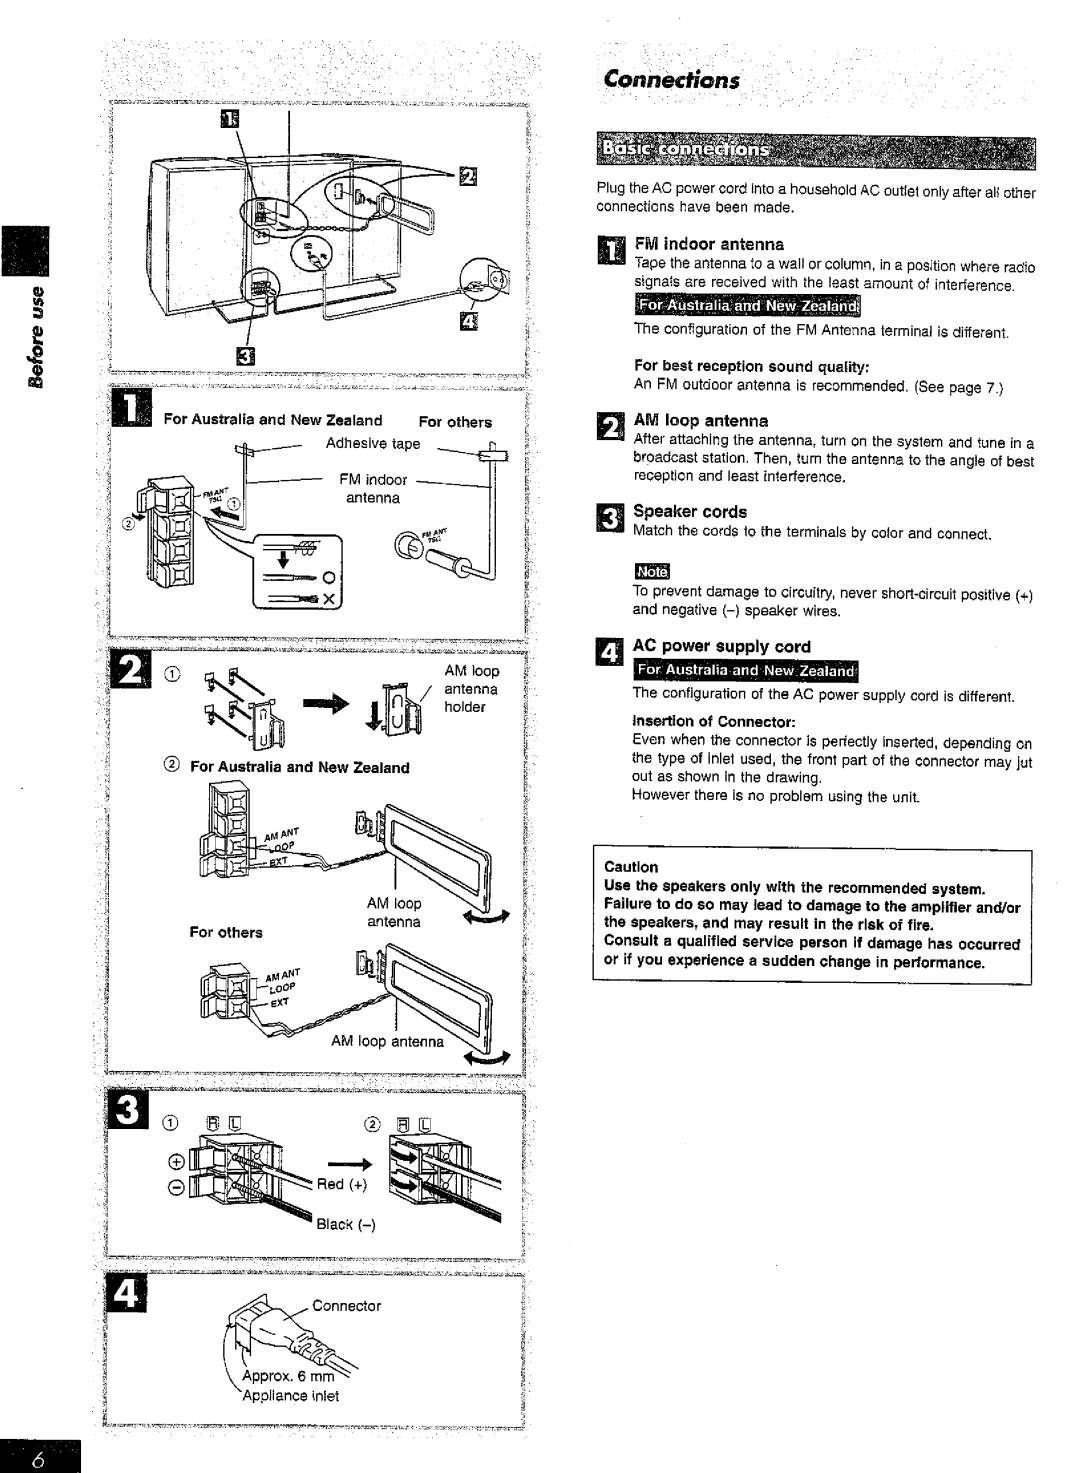 Panasonic SC-AK15 manual 